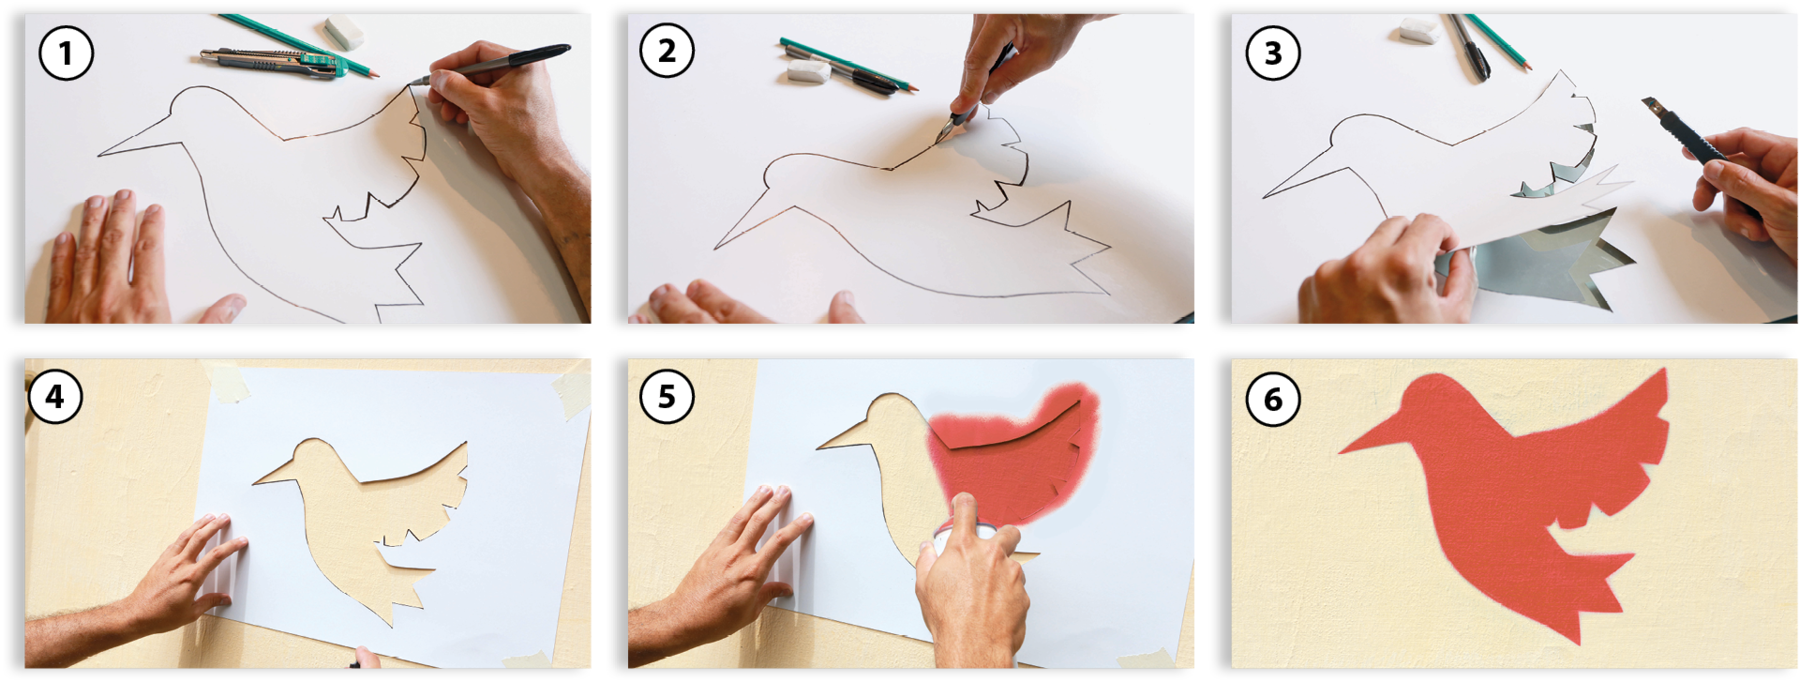 Fotografia. 1: Destaque de uma mão desenhando o contorno de um pássaro.
Fotografia. 2: Destaque de mão passando estilete pelo contorno de um pássaro desenhado.
Fotografia. 3: Mão destacando o recorte de um pássaro da folha de papel.
Fotografia. 4: Destaque de uma mão segurando o molde vazado, em forma de pássaro, contra uma parede.
Fotografia. 5: Mão passando tinta spray sobre a parede através do molde em forma de pássaro.
Fotografia. 6: Pintura de um pássaro vermelho sobre a parede.